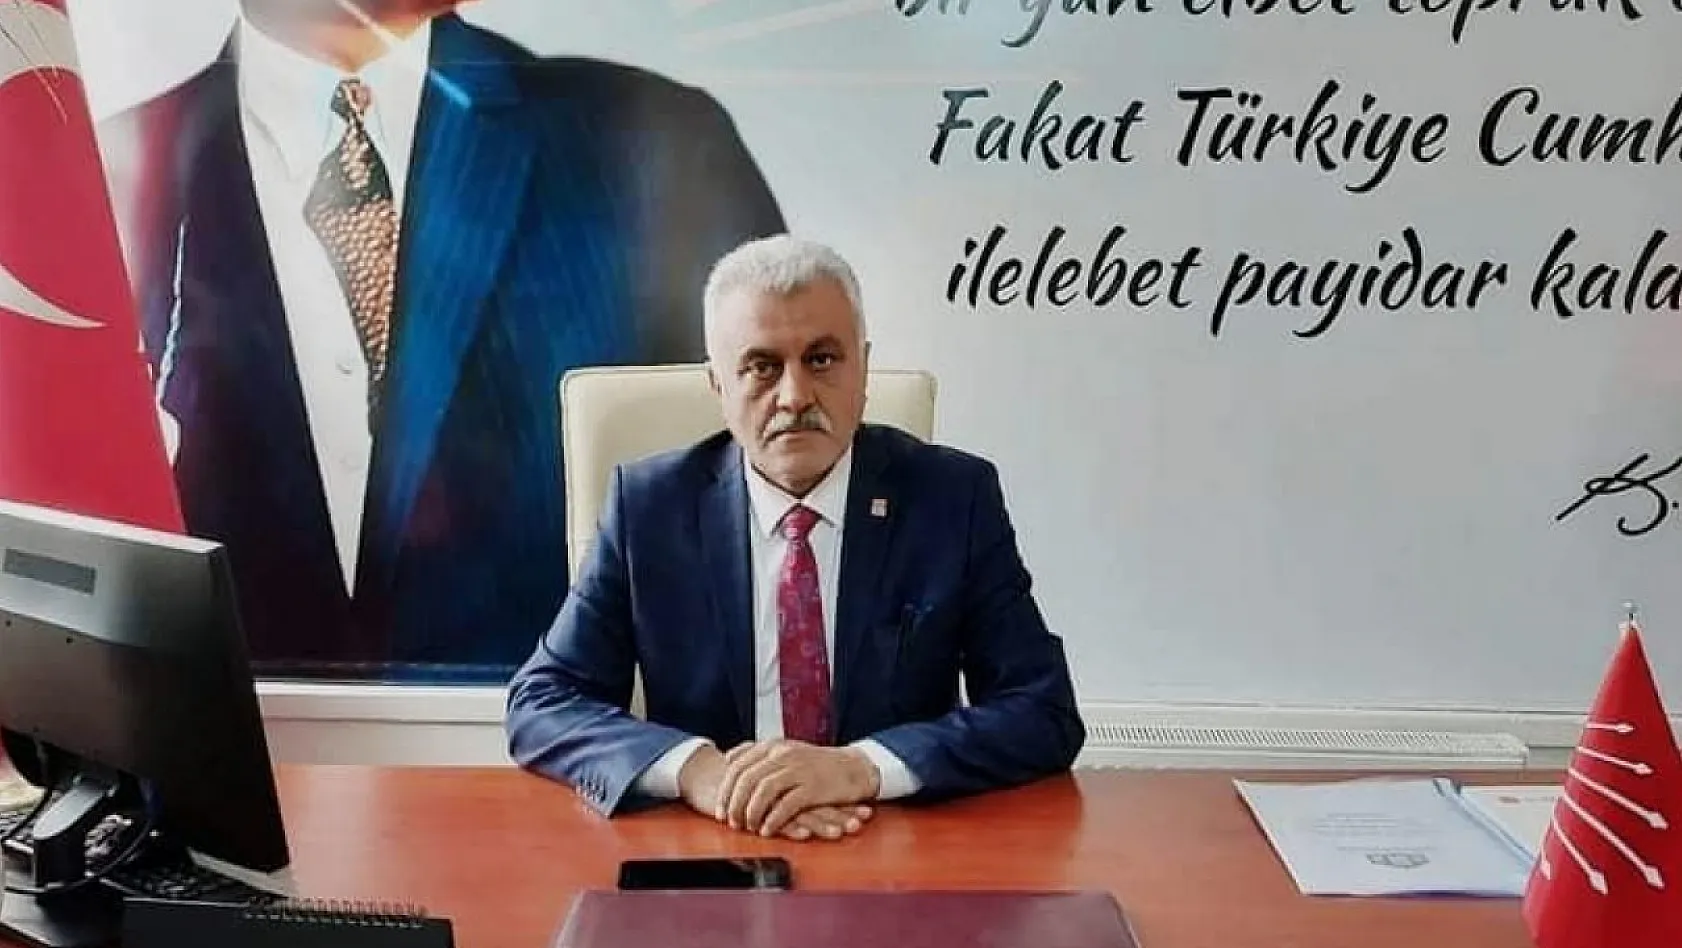 CHP Kayseri İl Başkanı İstifa Etti